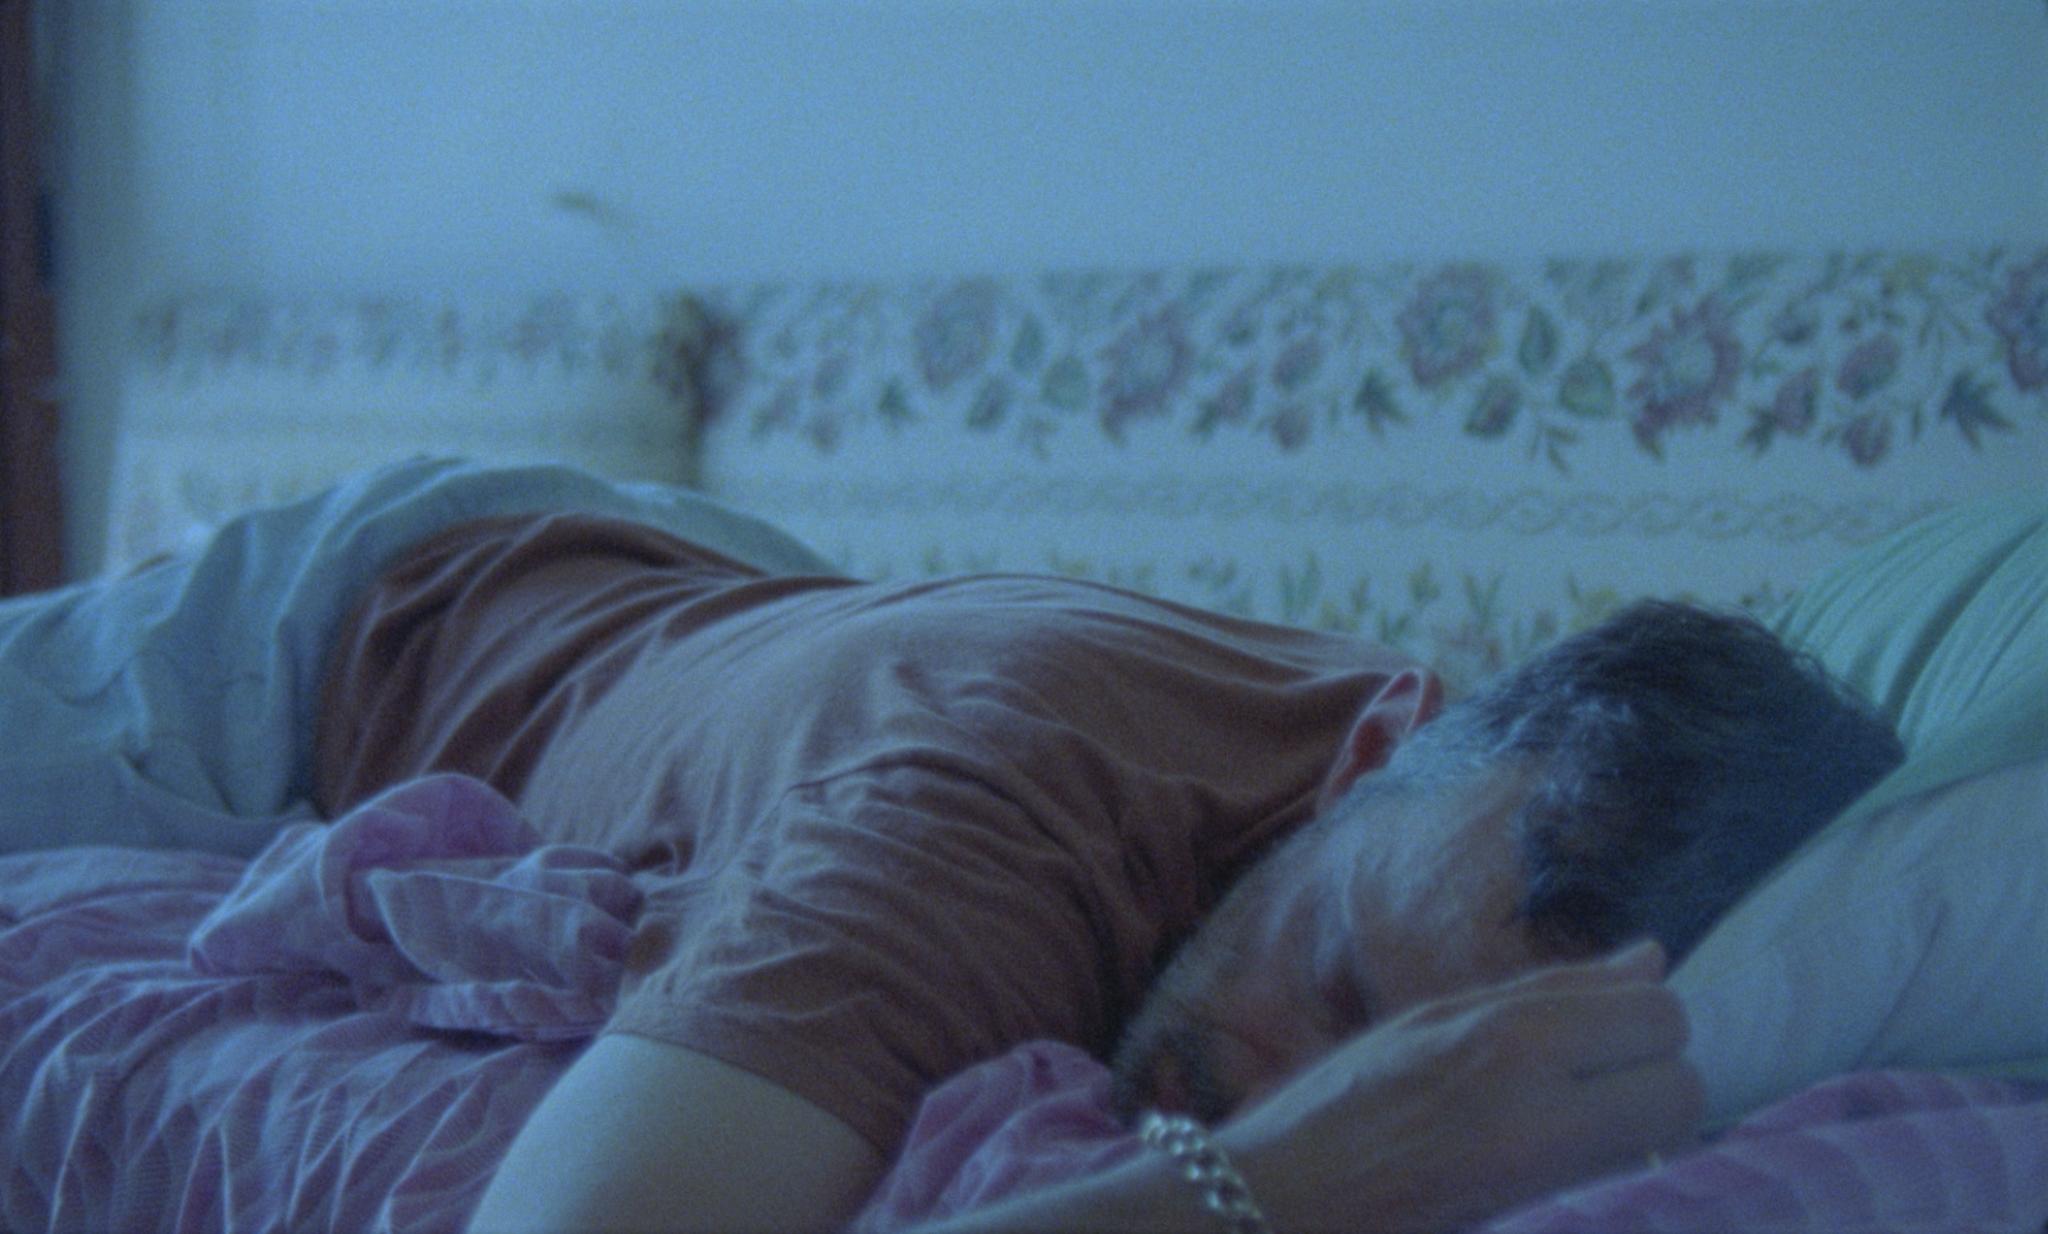 Dreaming Alcestis [still], un film di Beatrice Gibson, co diretto da Nicholas Gordon, 2022. Realizzato grazie al sostegno di Italian Council (2021), commissionato dal Museo Civico di Castelbuono